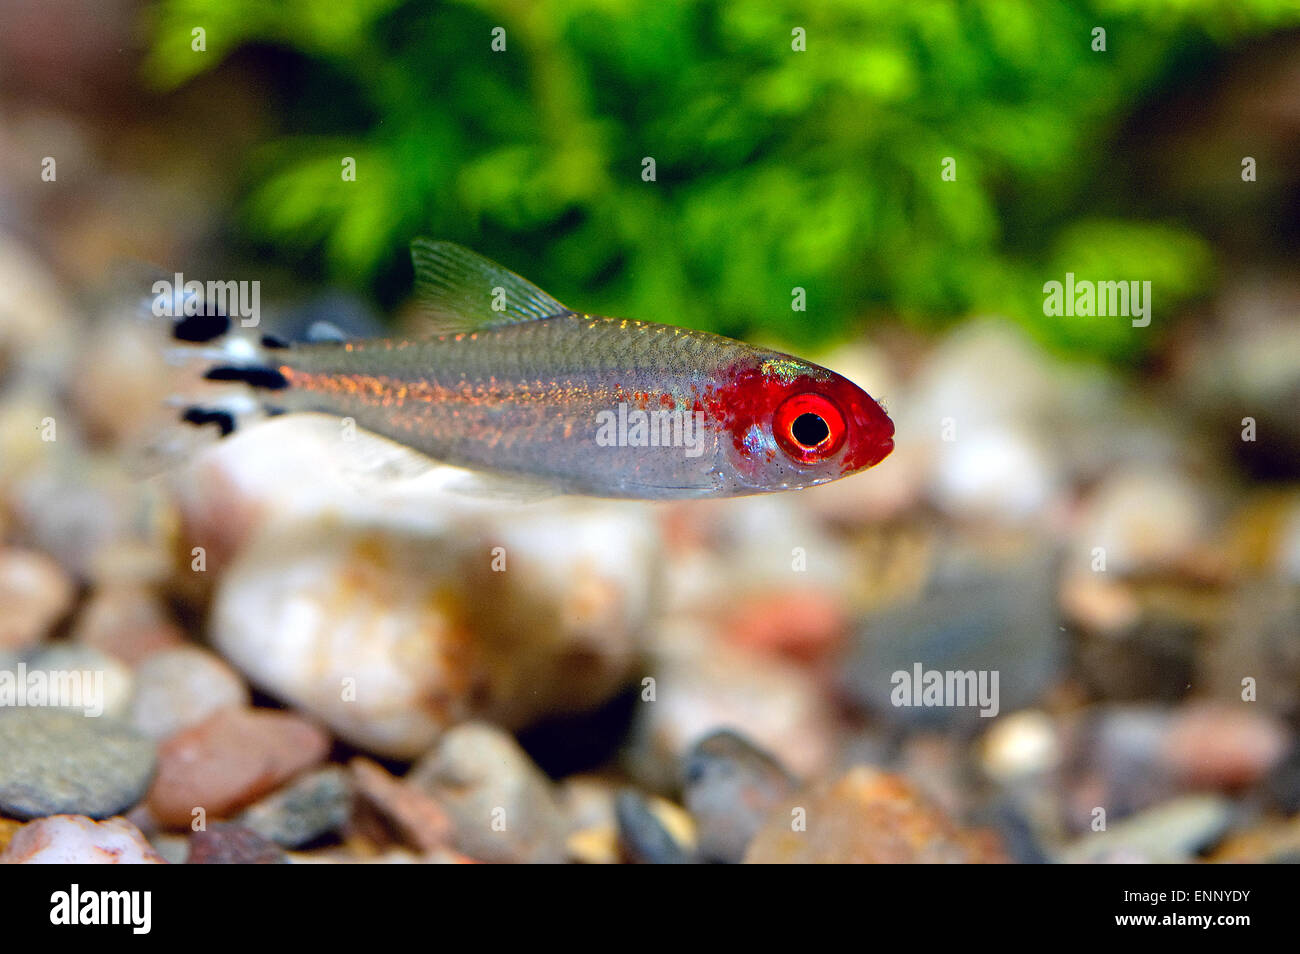 Nice red head tetra fish from genus Hemigrammus. Stock Photo